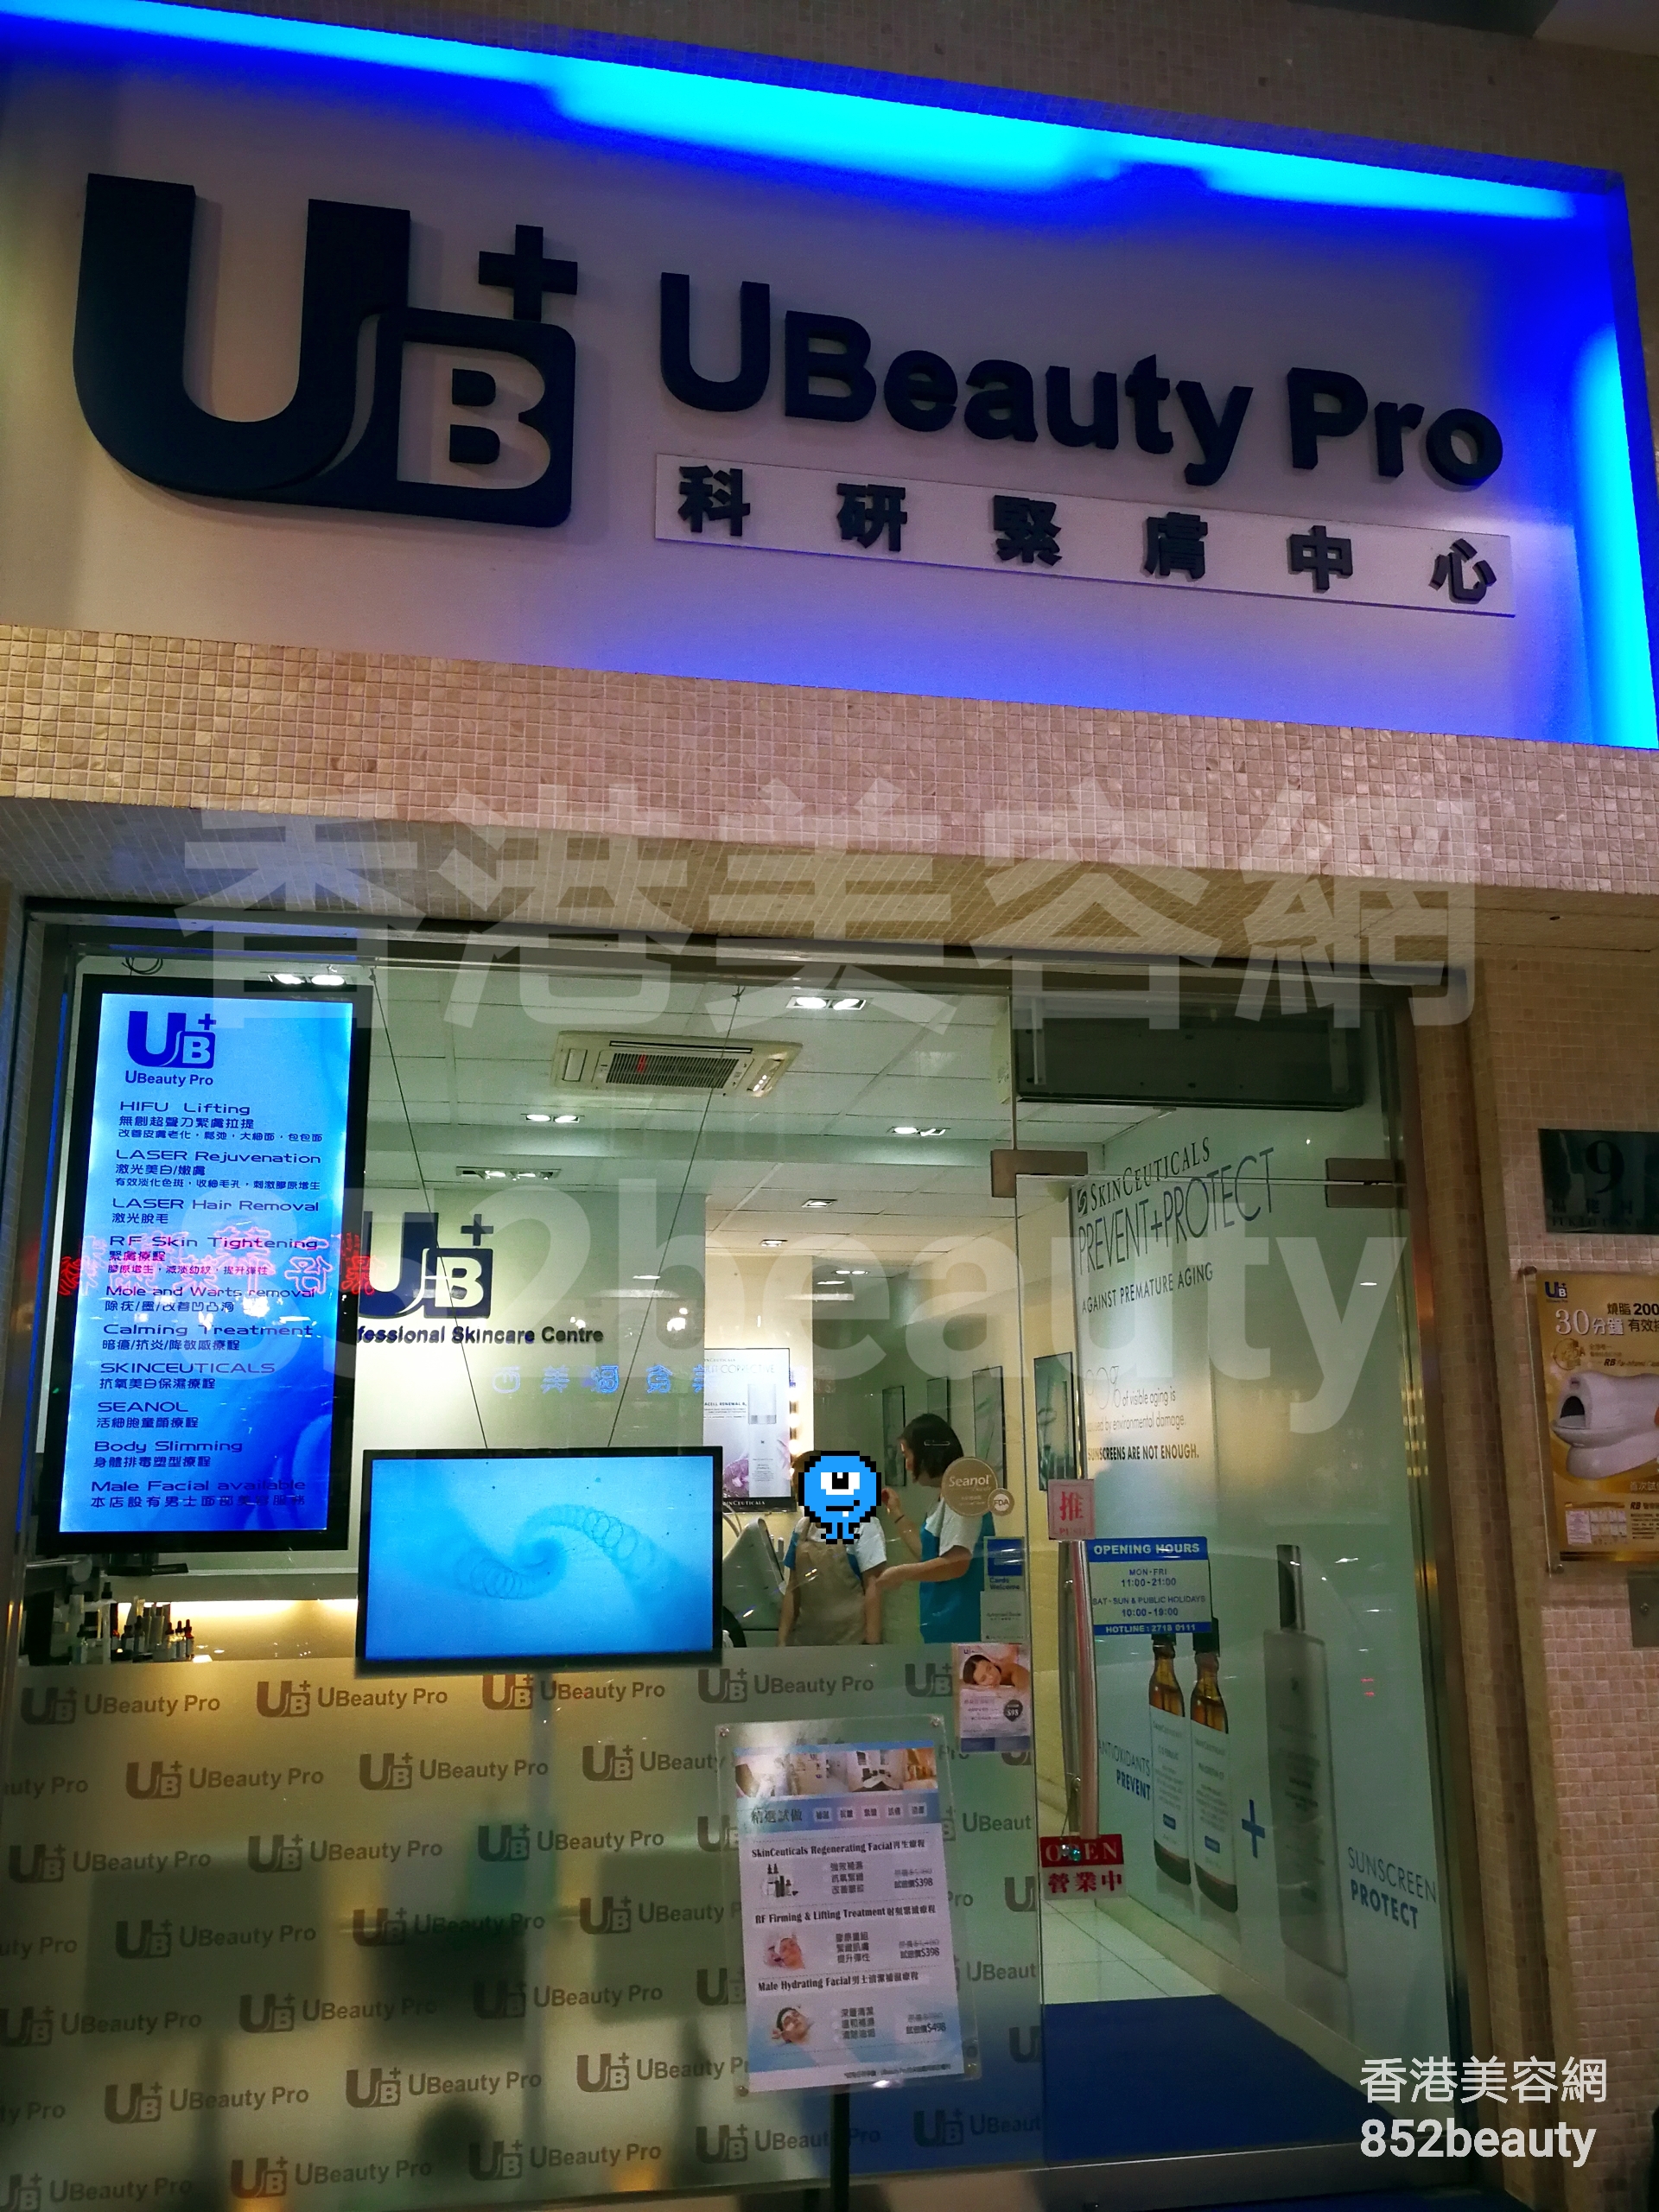 纖體瘦身: Ubeauty Pro (九龍城旗艦店)